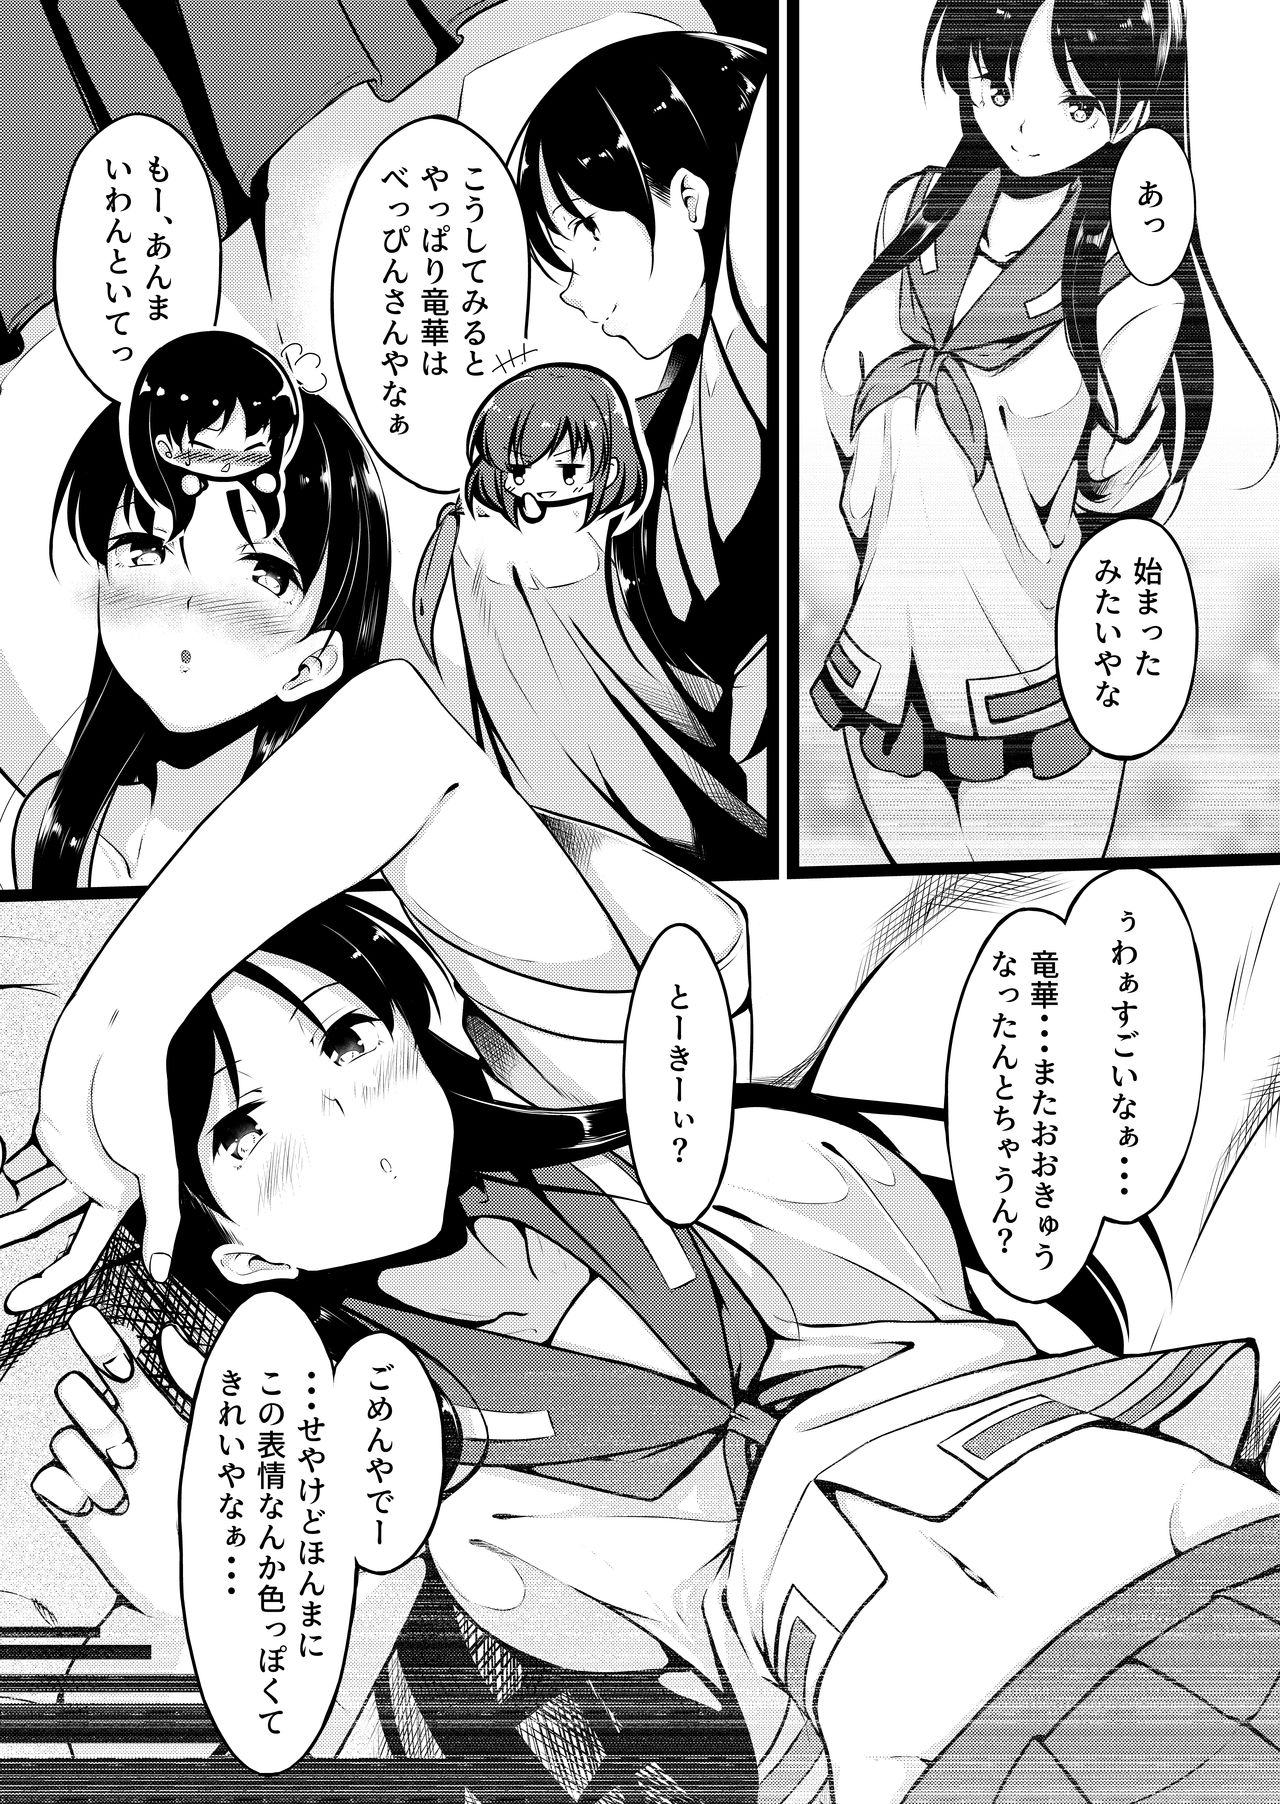 [Miso Oden] Shimizudani Ryuuka no Mijikai Ero Manga (Saki) page 2 full